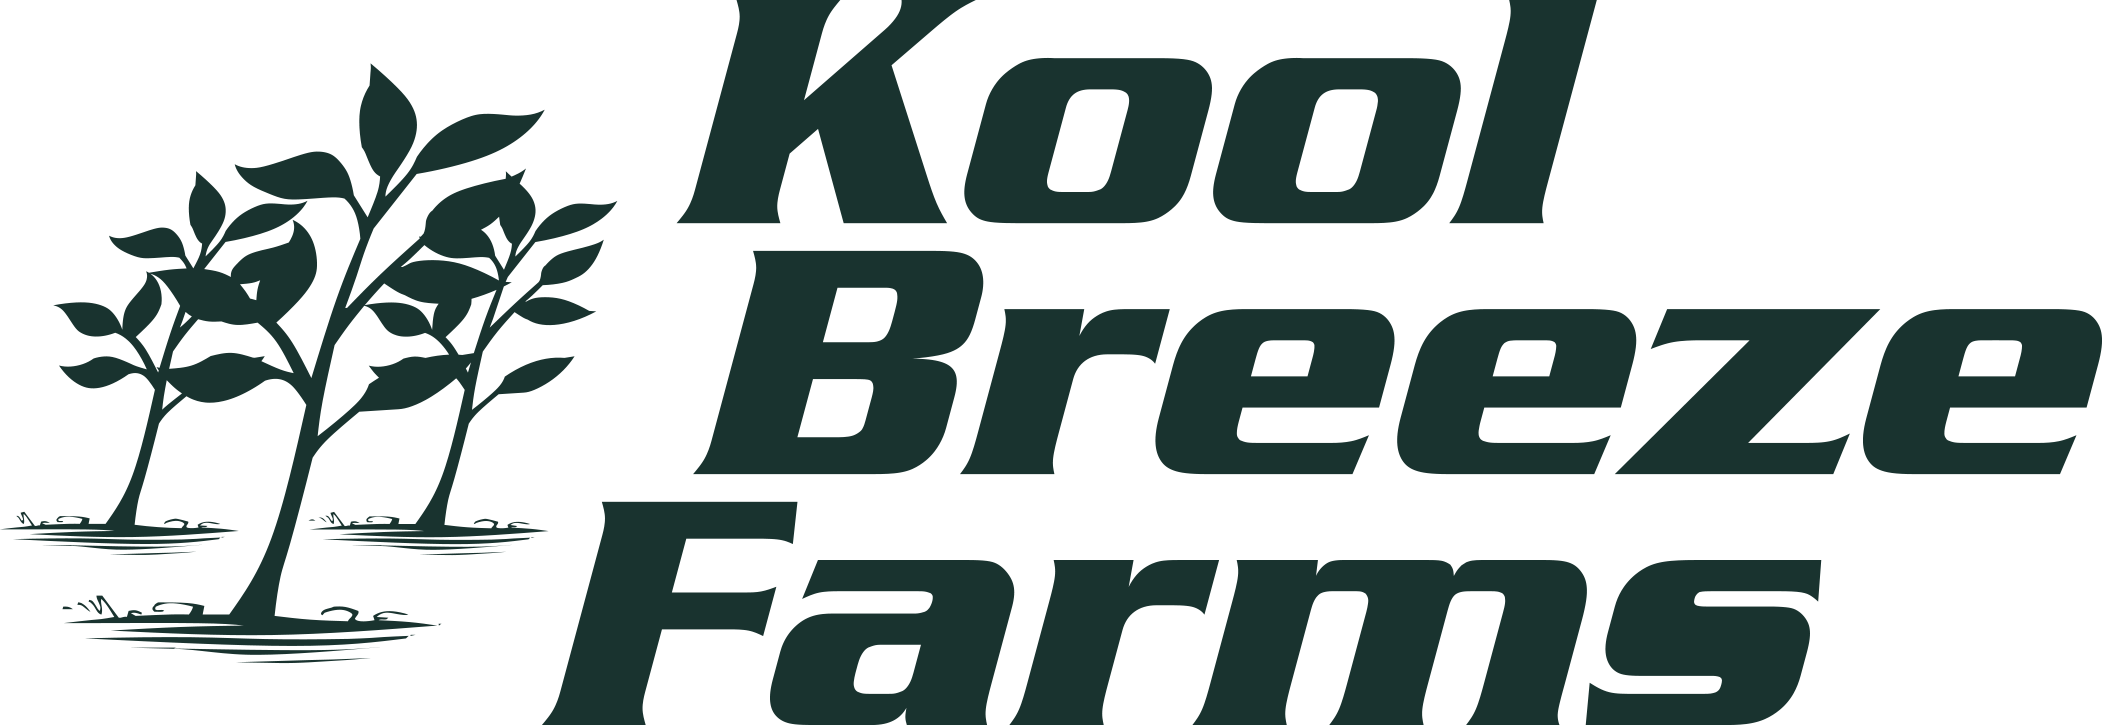 Kool Breeze Farms